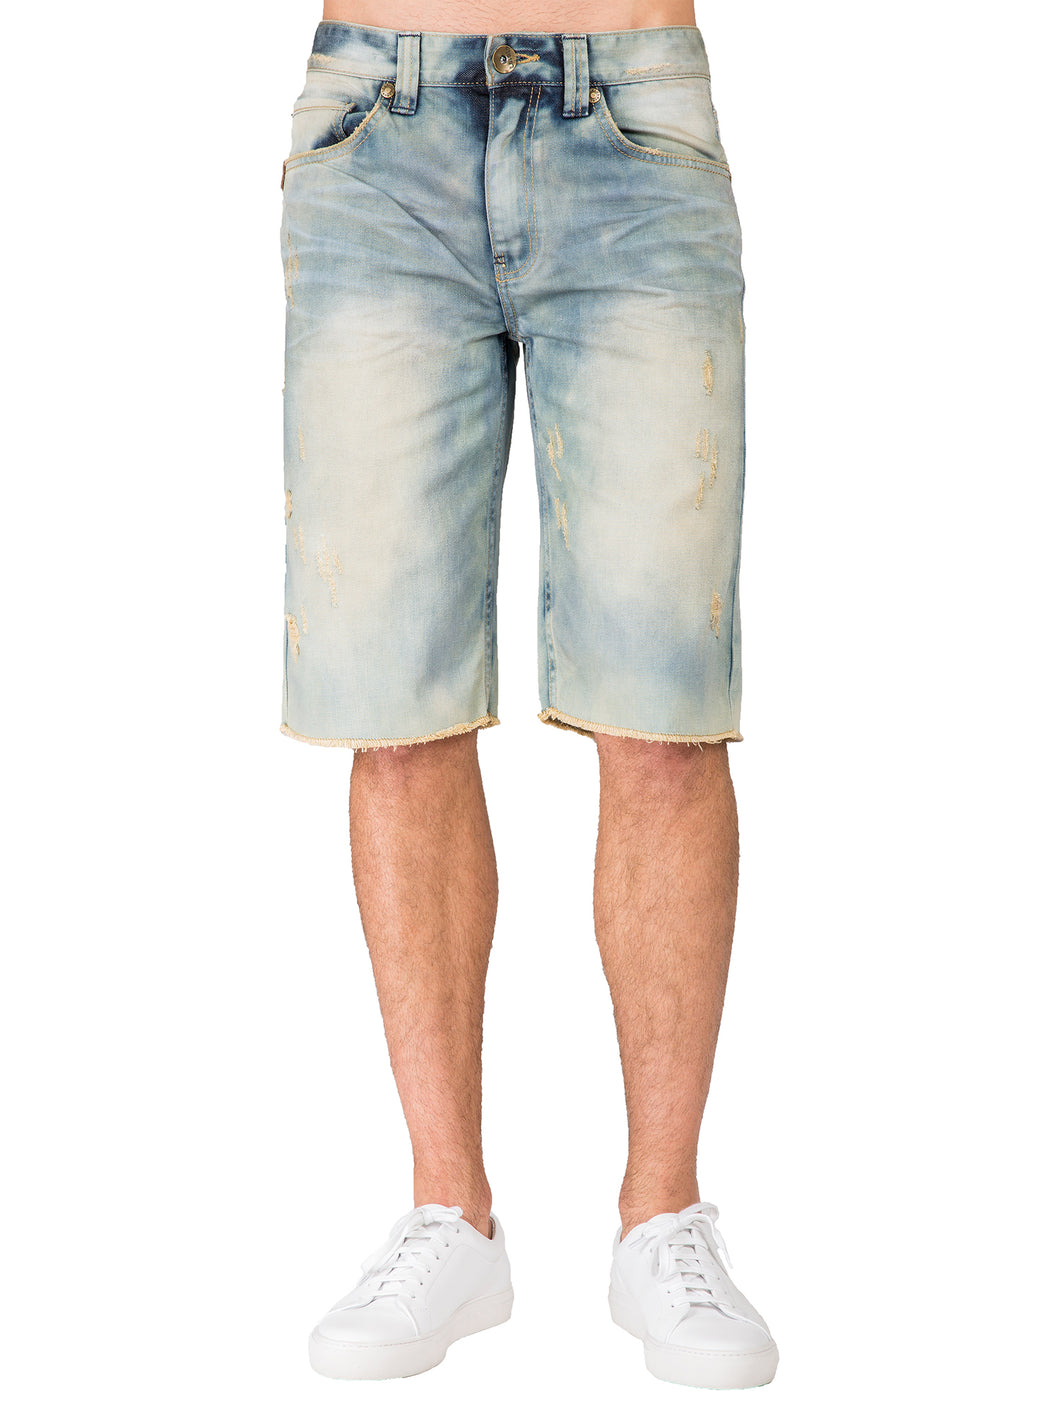 Men's Premium Denim Shorts Fit Light Blue Khaki Tinted 13